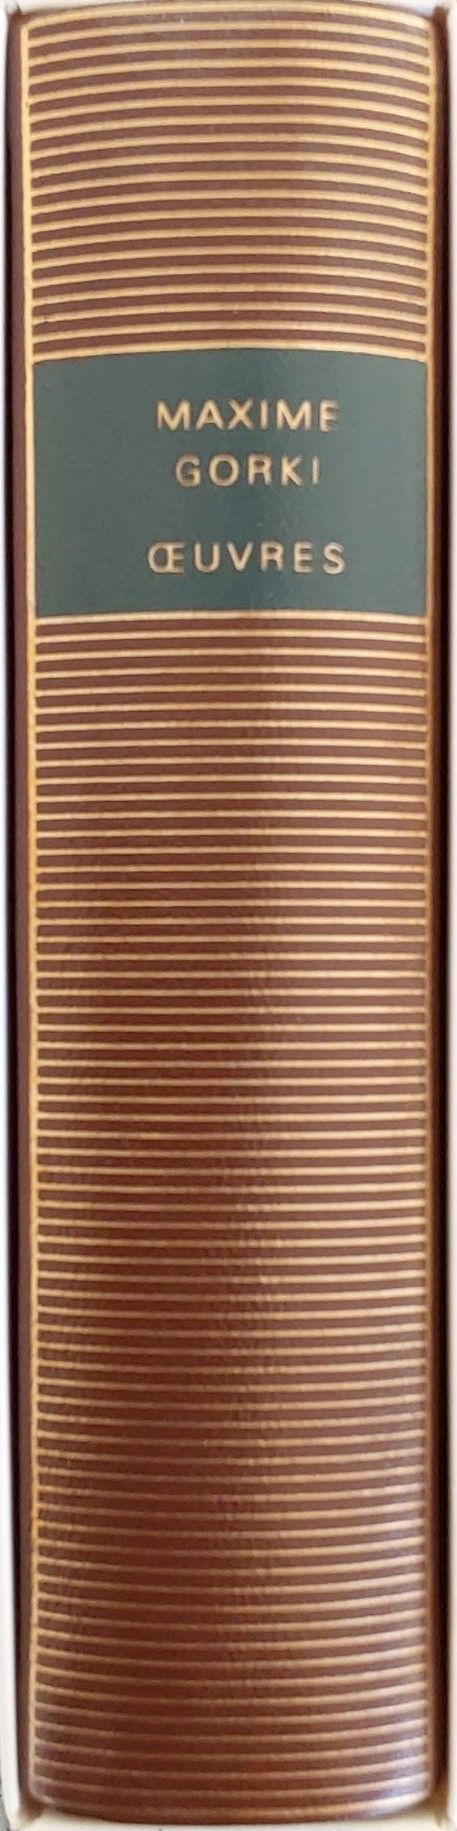 Volume 521 de Maxime Gorki dans la collection  de la Pléiade.